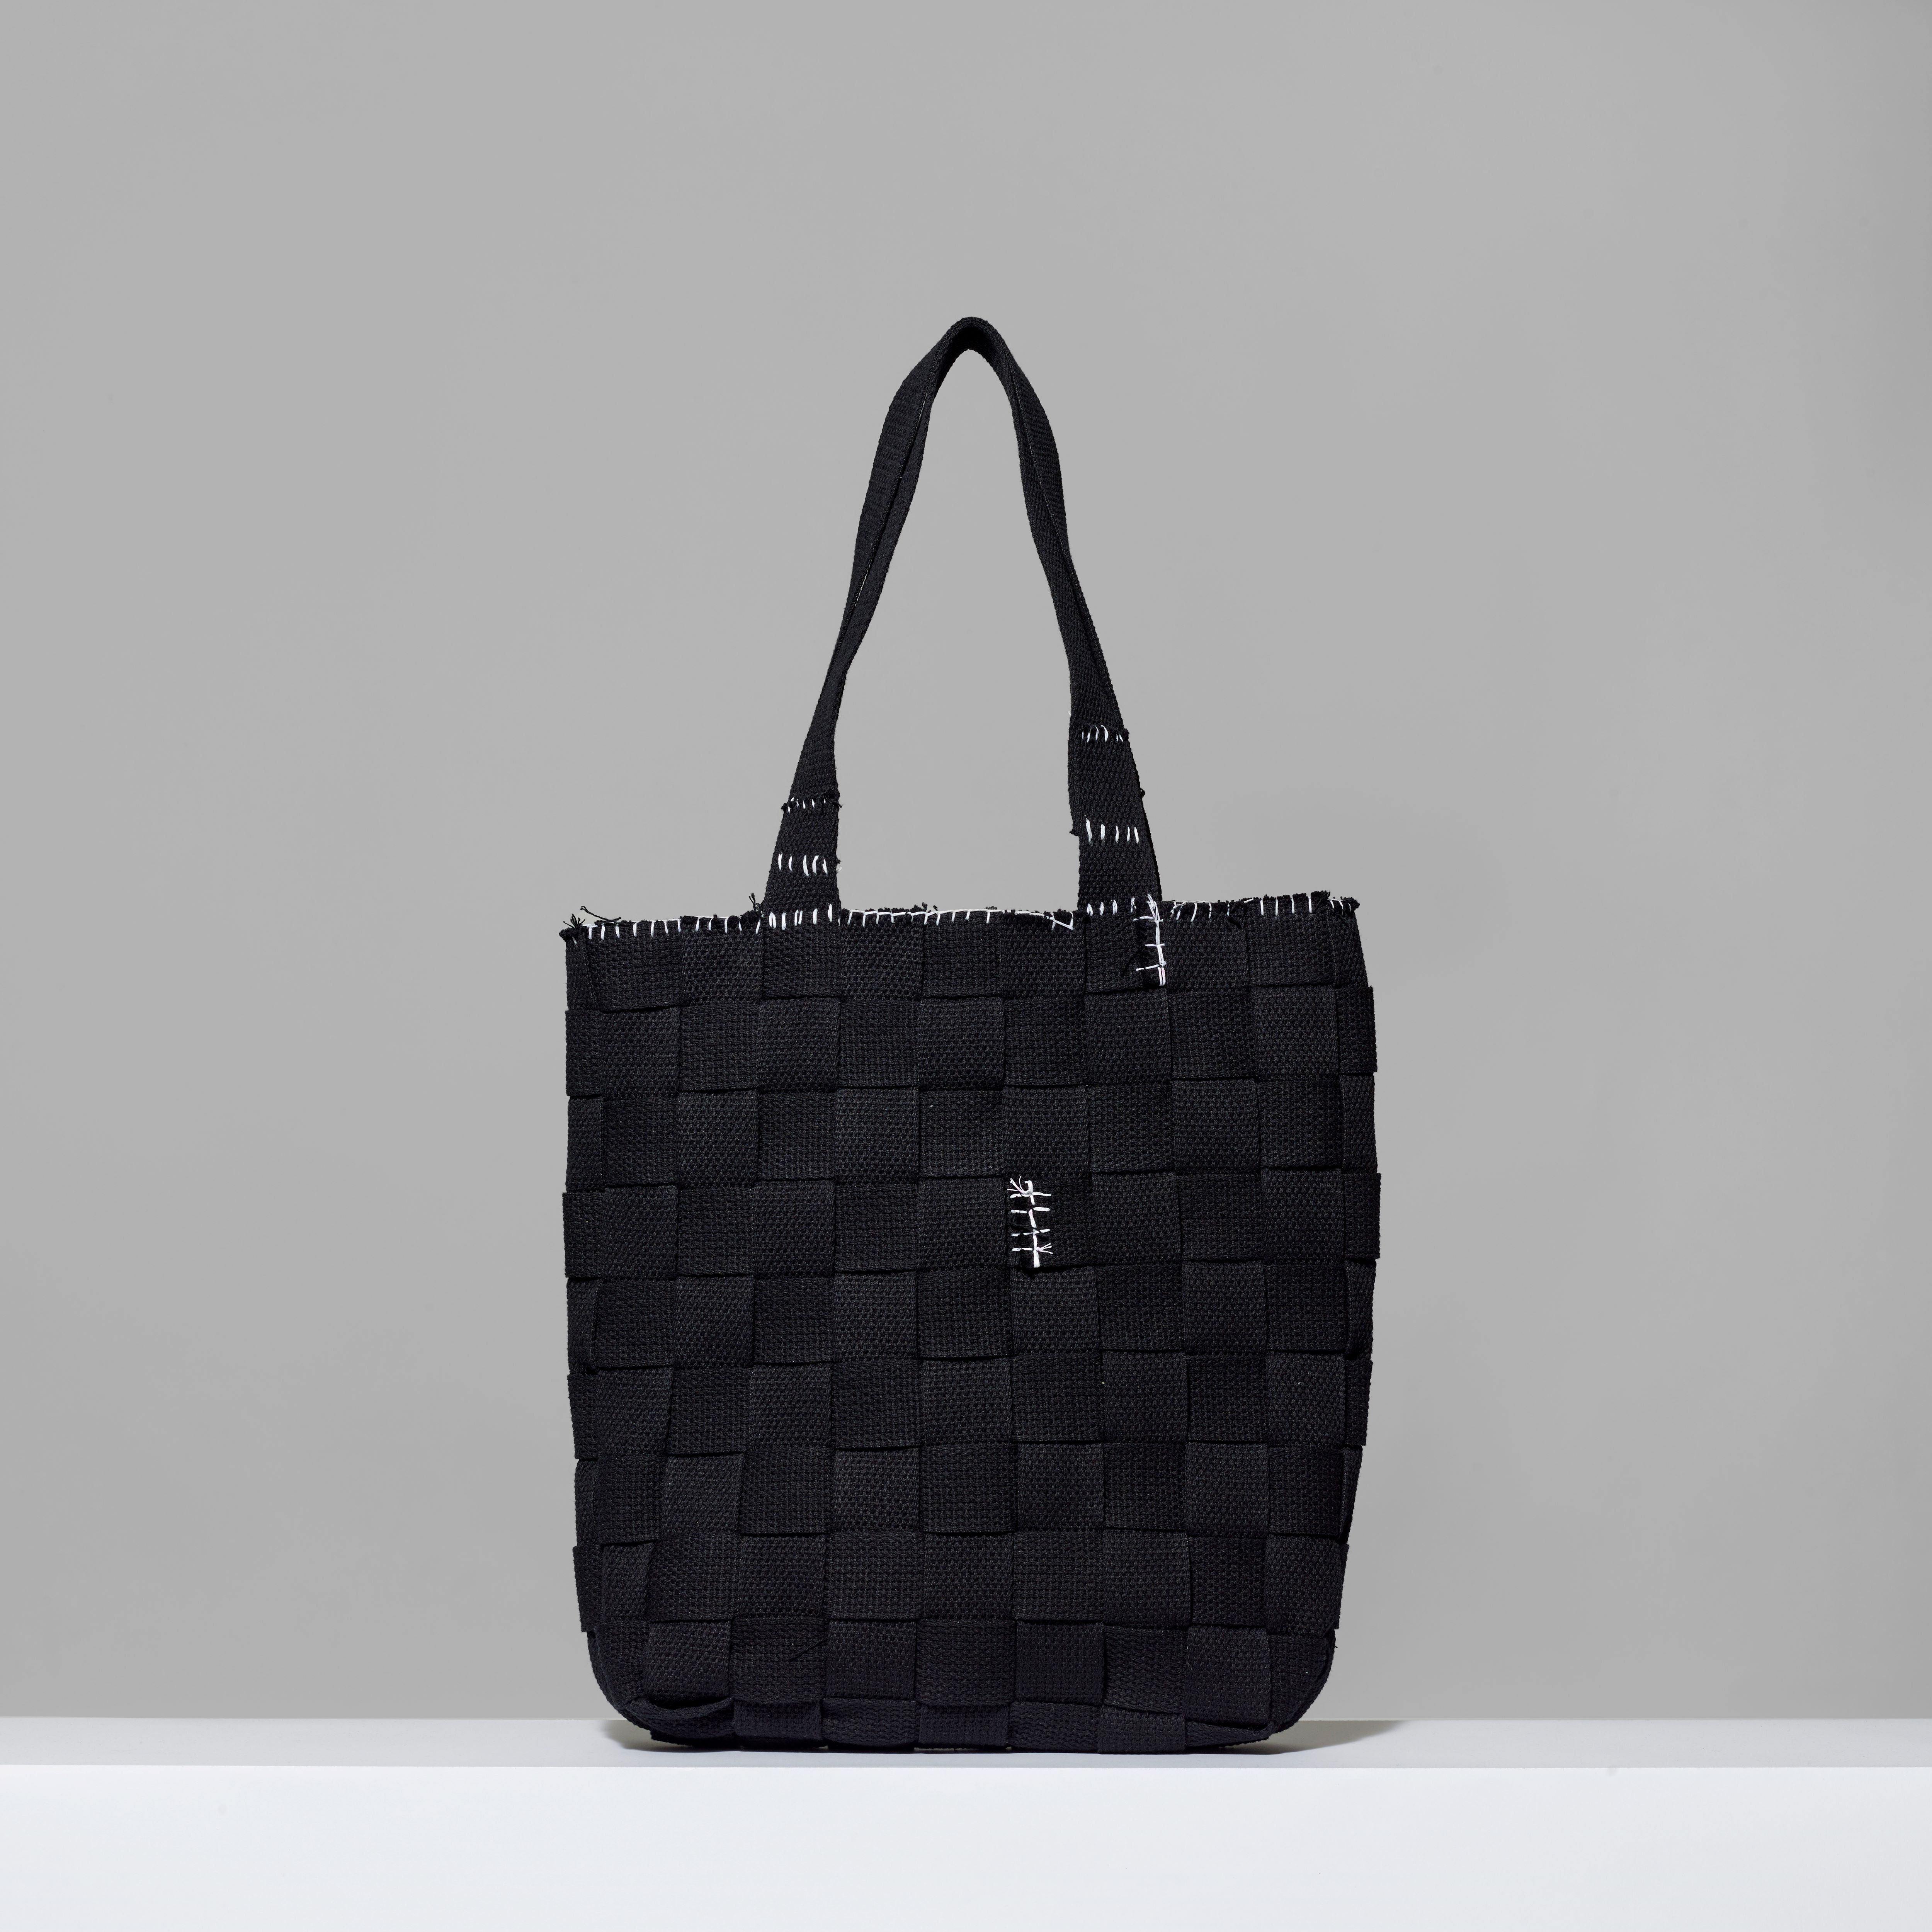 Black 100% cotton canvas bag by VEHICLE. Measures 16" H x 15" L x 3" W